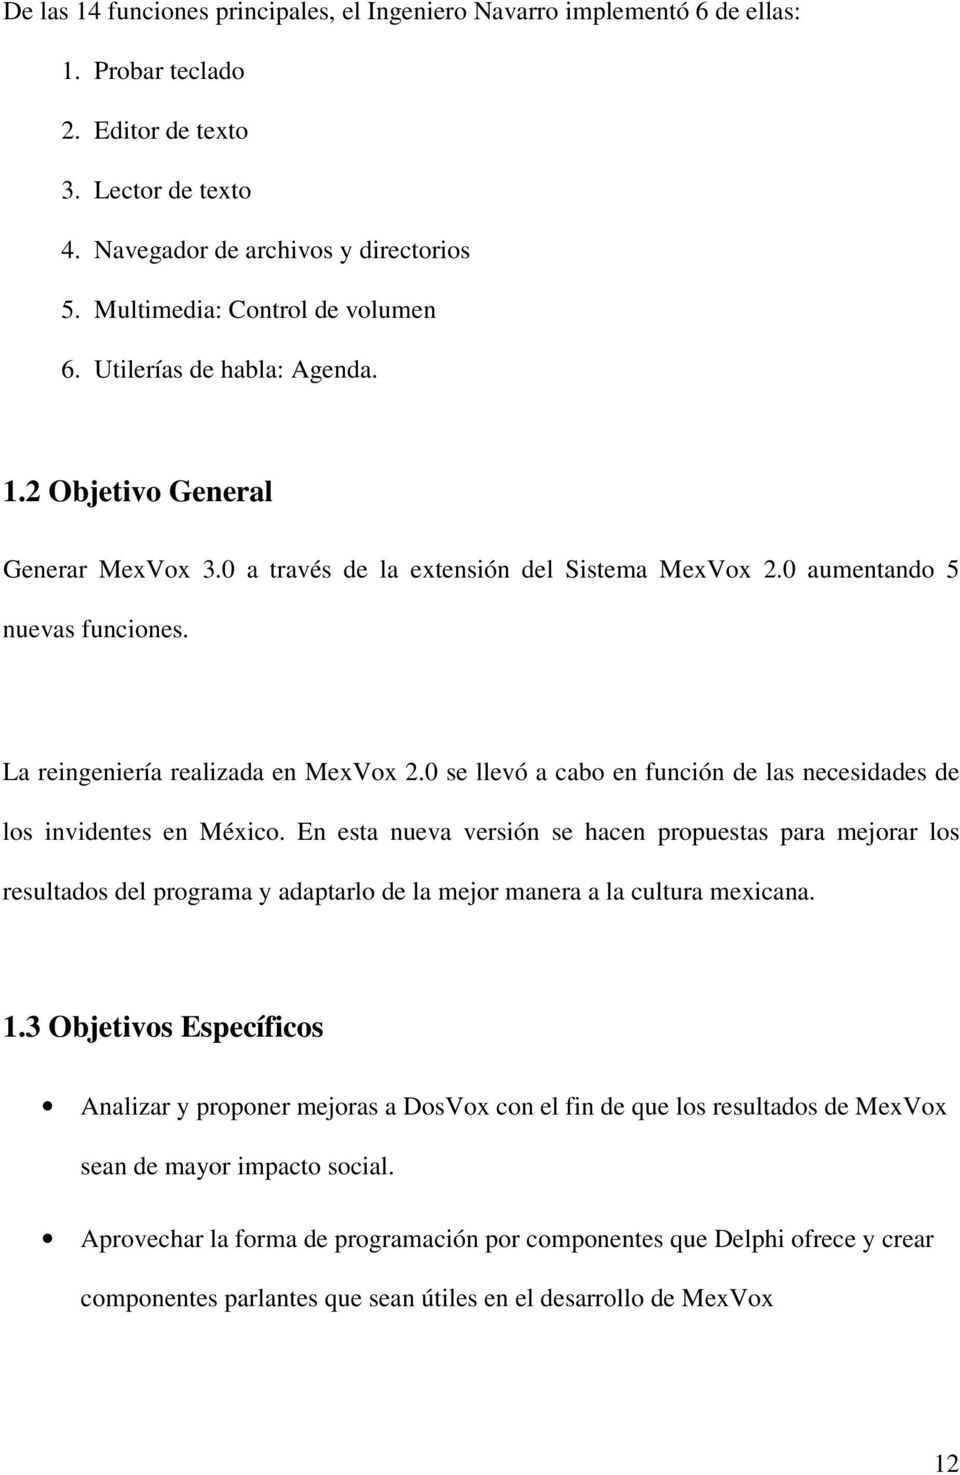 La reingeniería realizada en MexVox 2.0 se llevó a cabo en función de las necesidades de los invidentes en México.